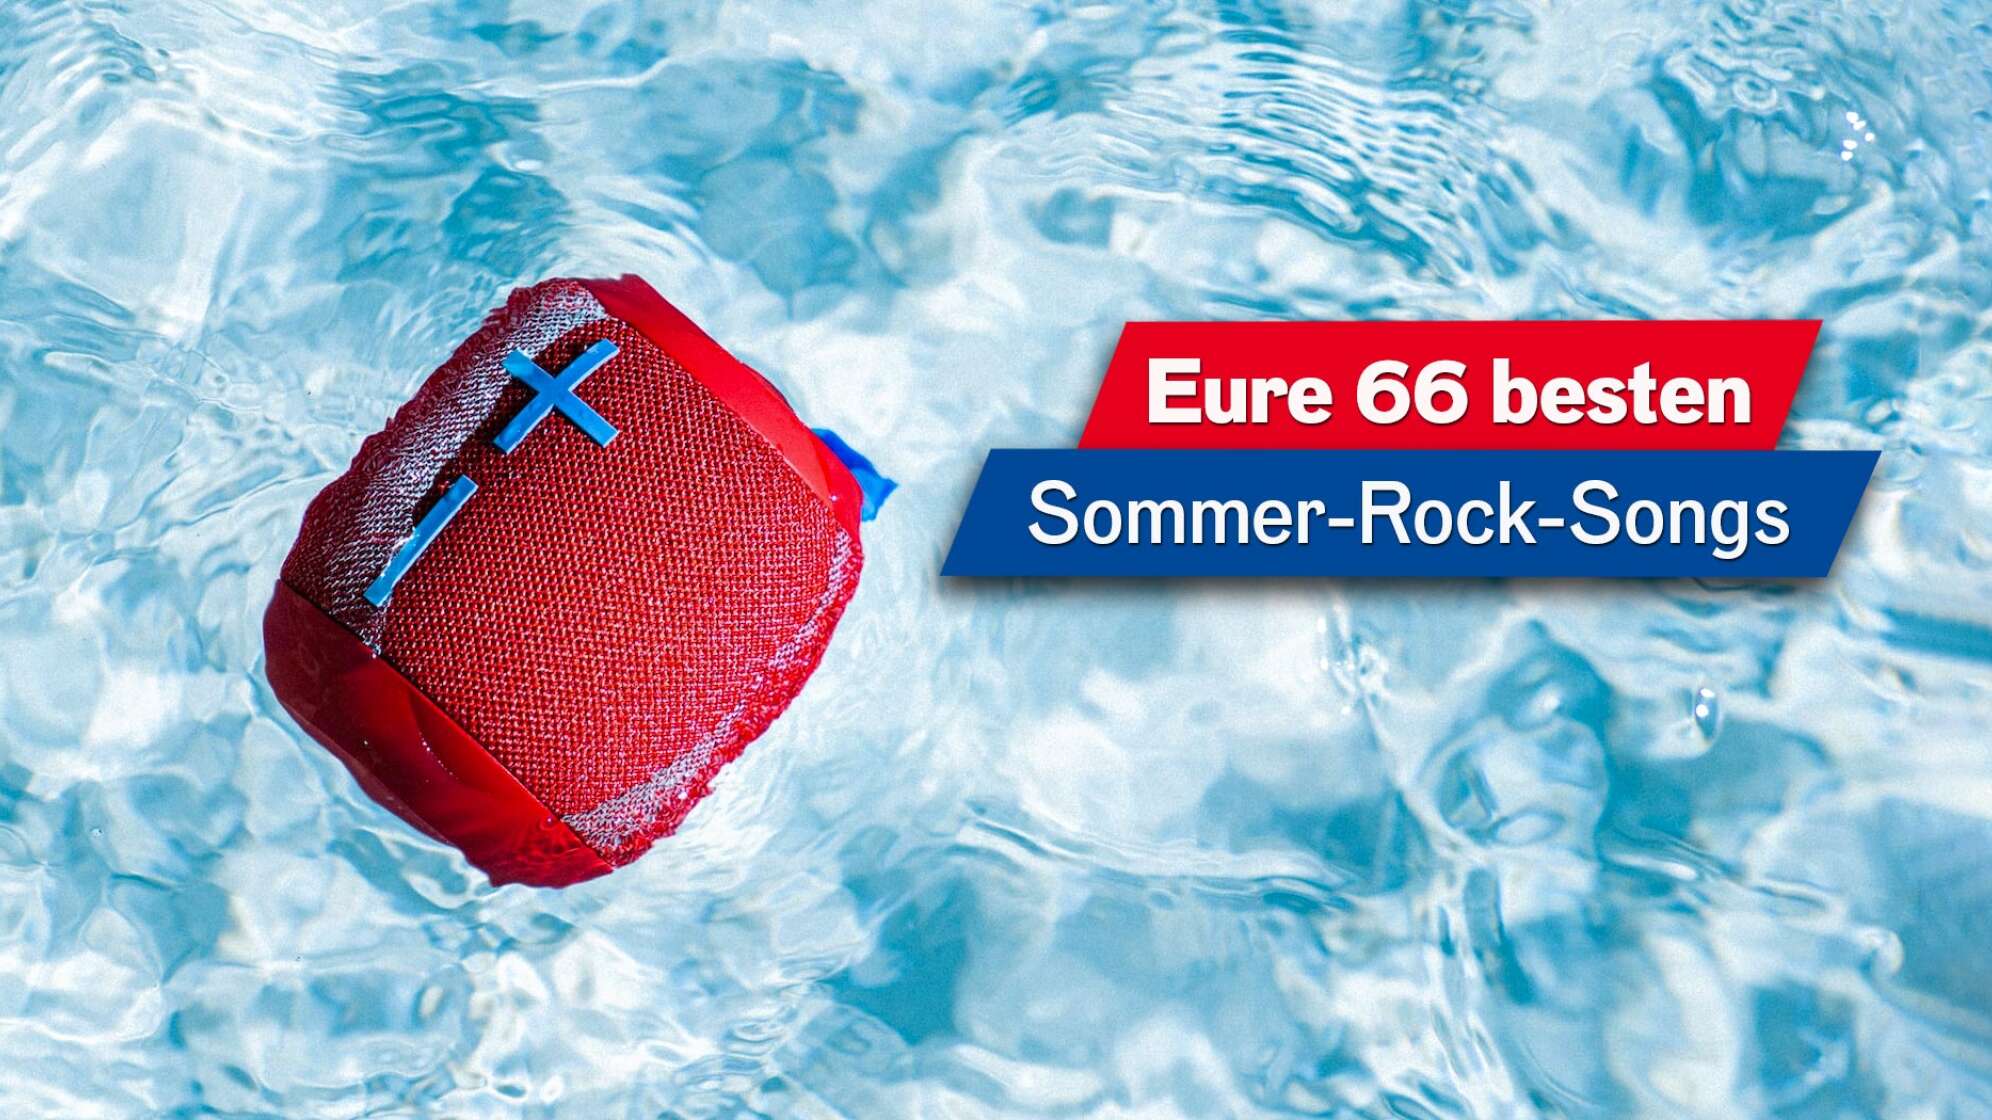 Ein Bild von einem roten JBL Bluetooth Lautsprecher, der in türkisblauem Poolwasser treibt; Text: "Eure 66 besten Sommer-Rock-Songs"